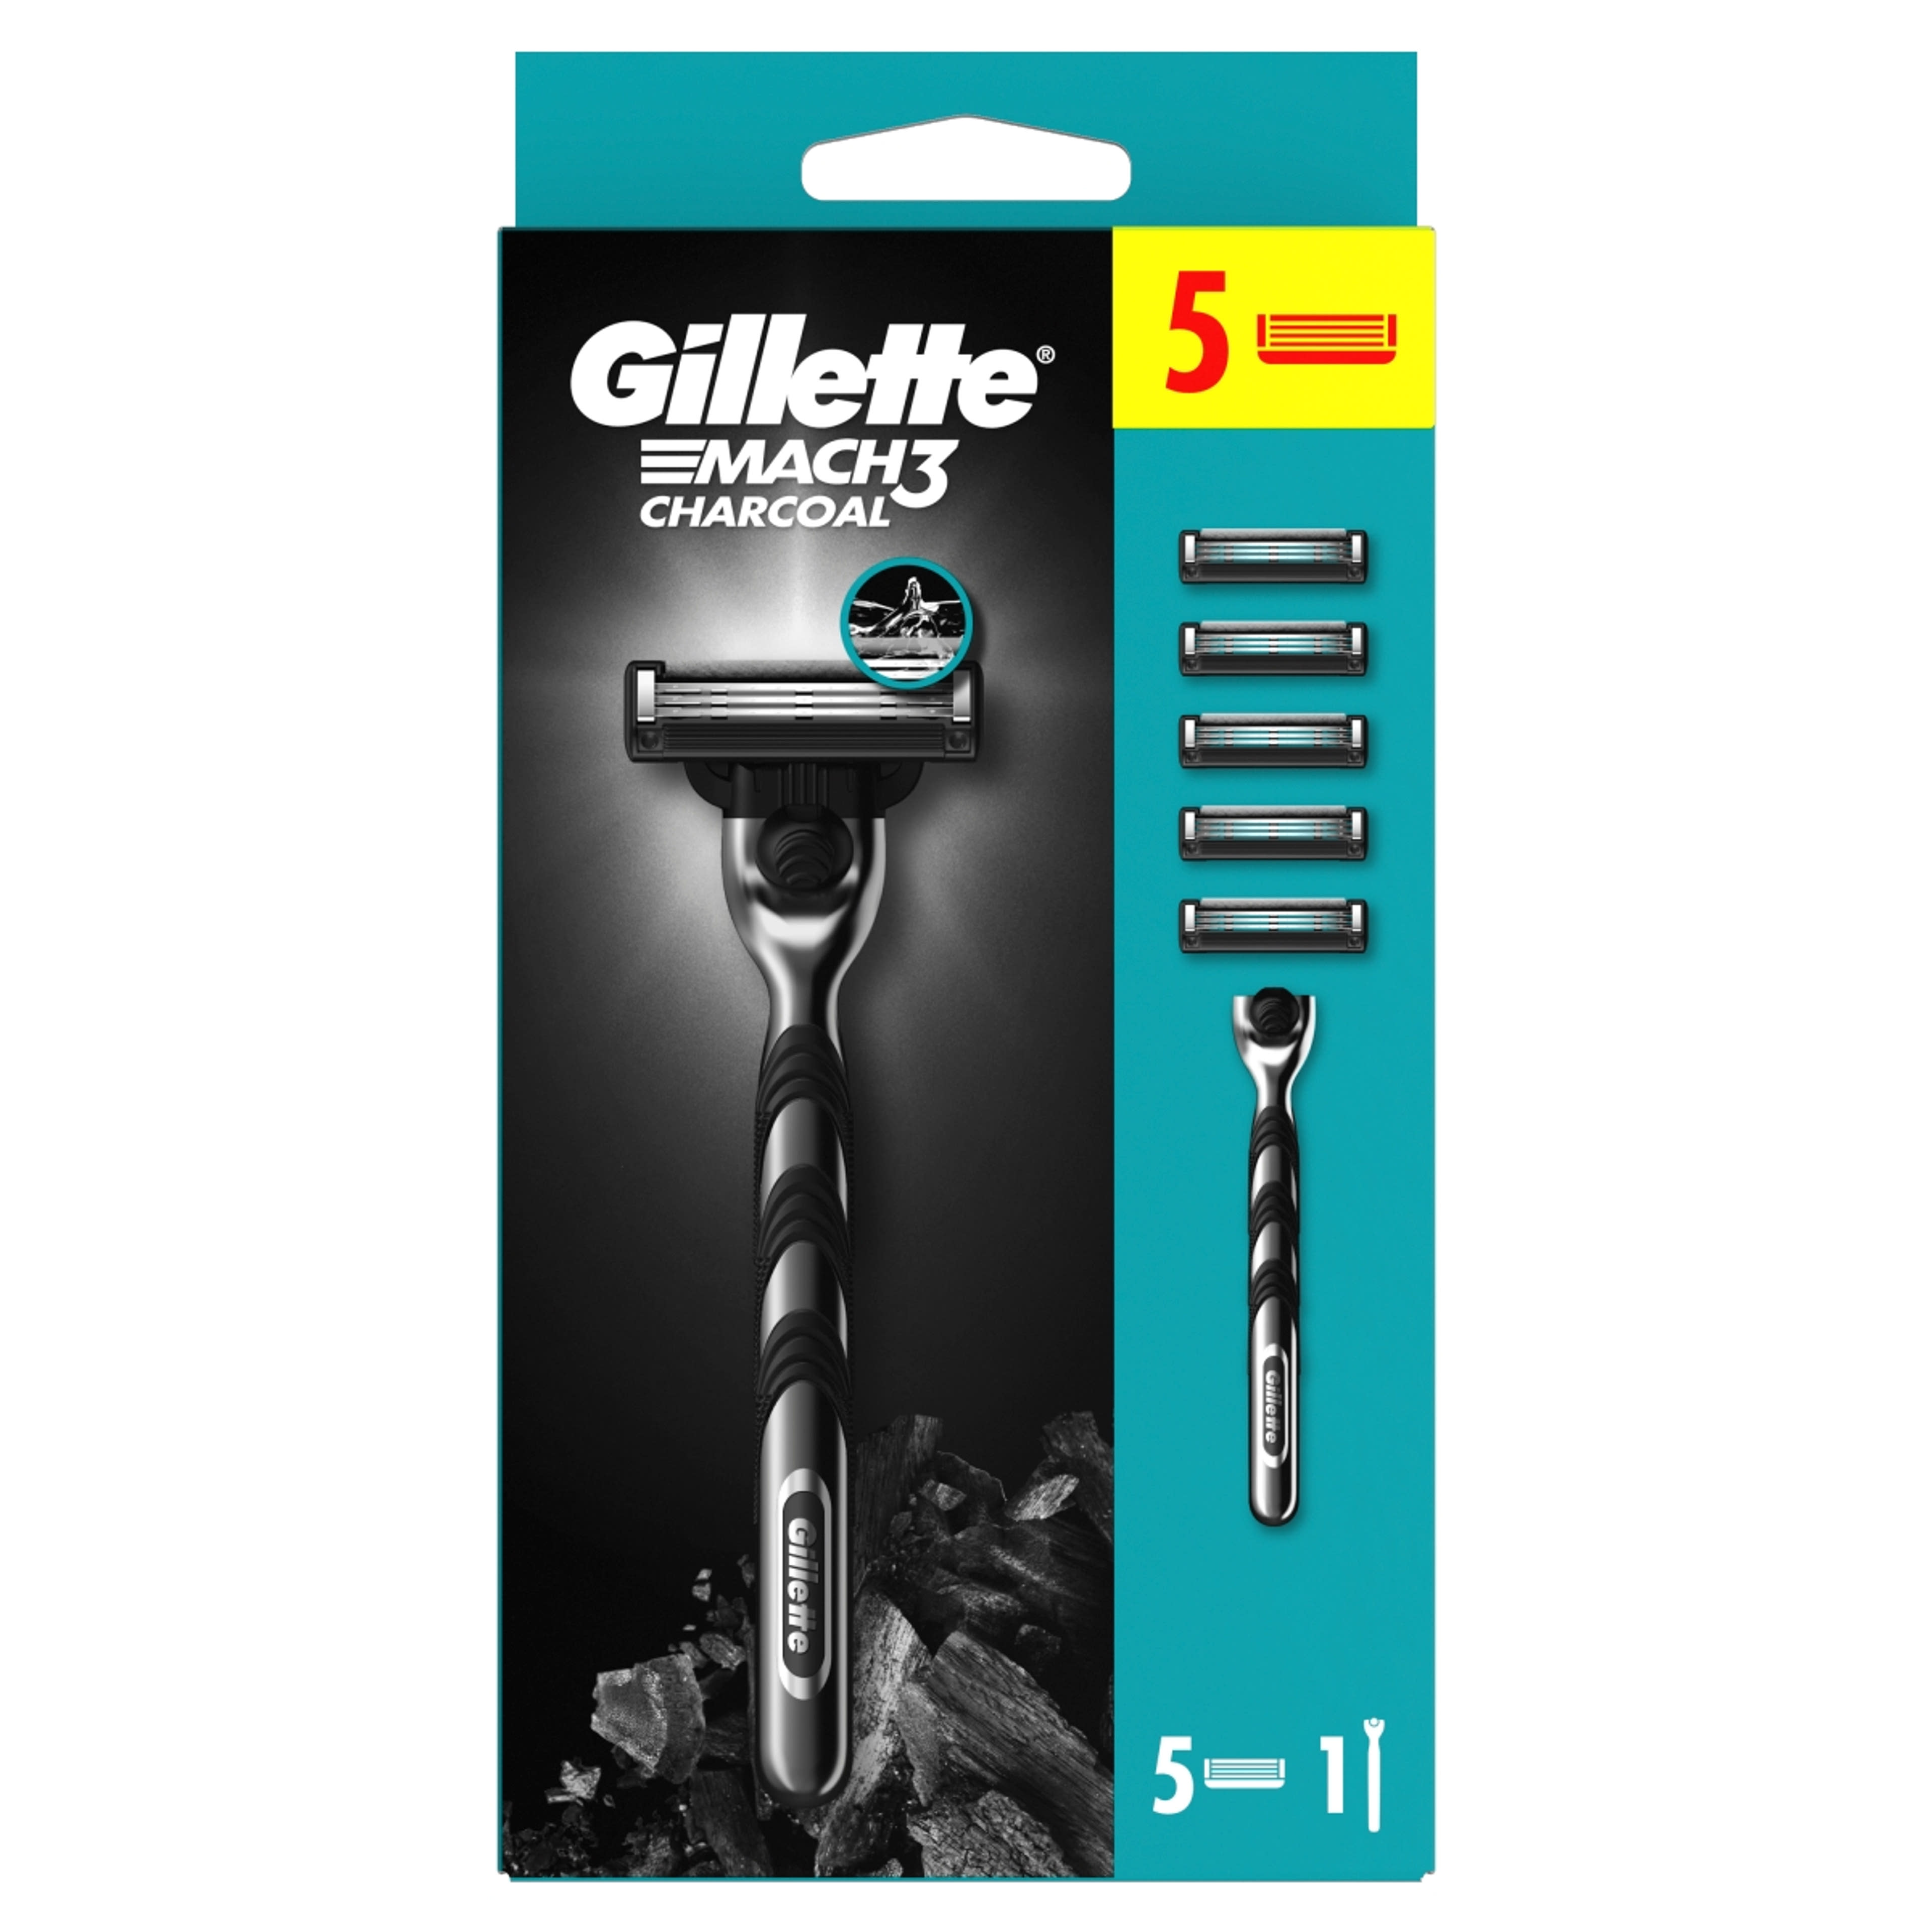 Gillette Mach3 Charcoal borotva készülék + 5 db betét - 1 db